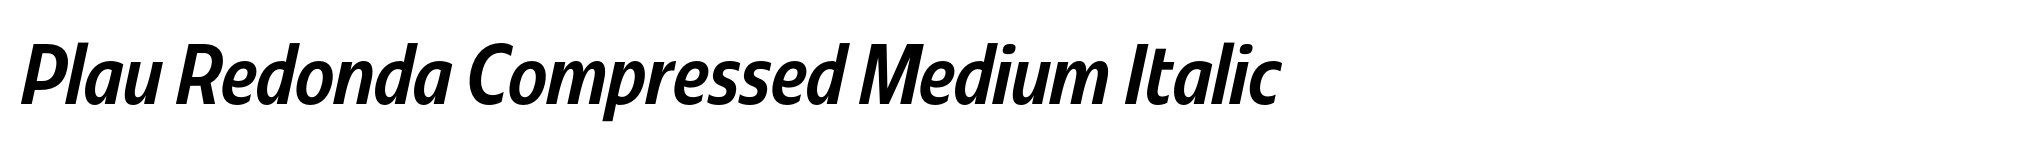 Plau Redonda Compressed Medium Italic image